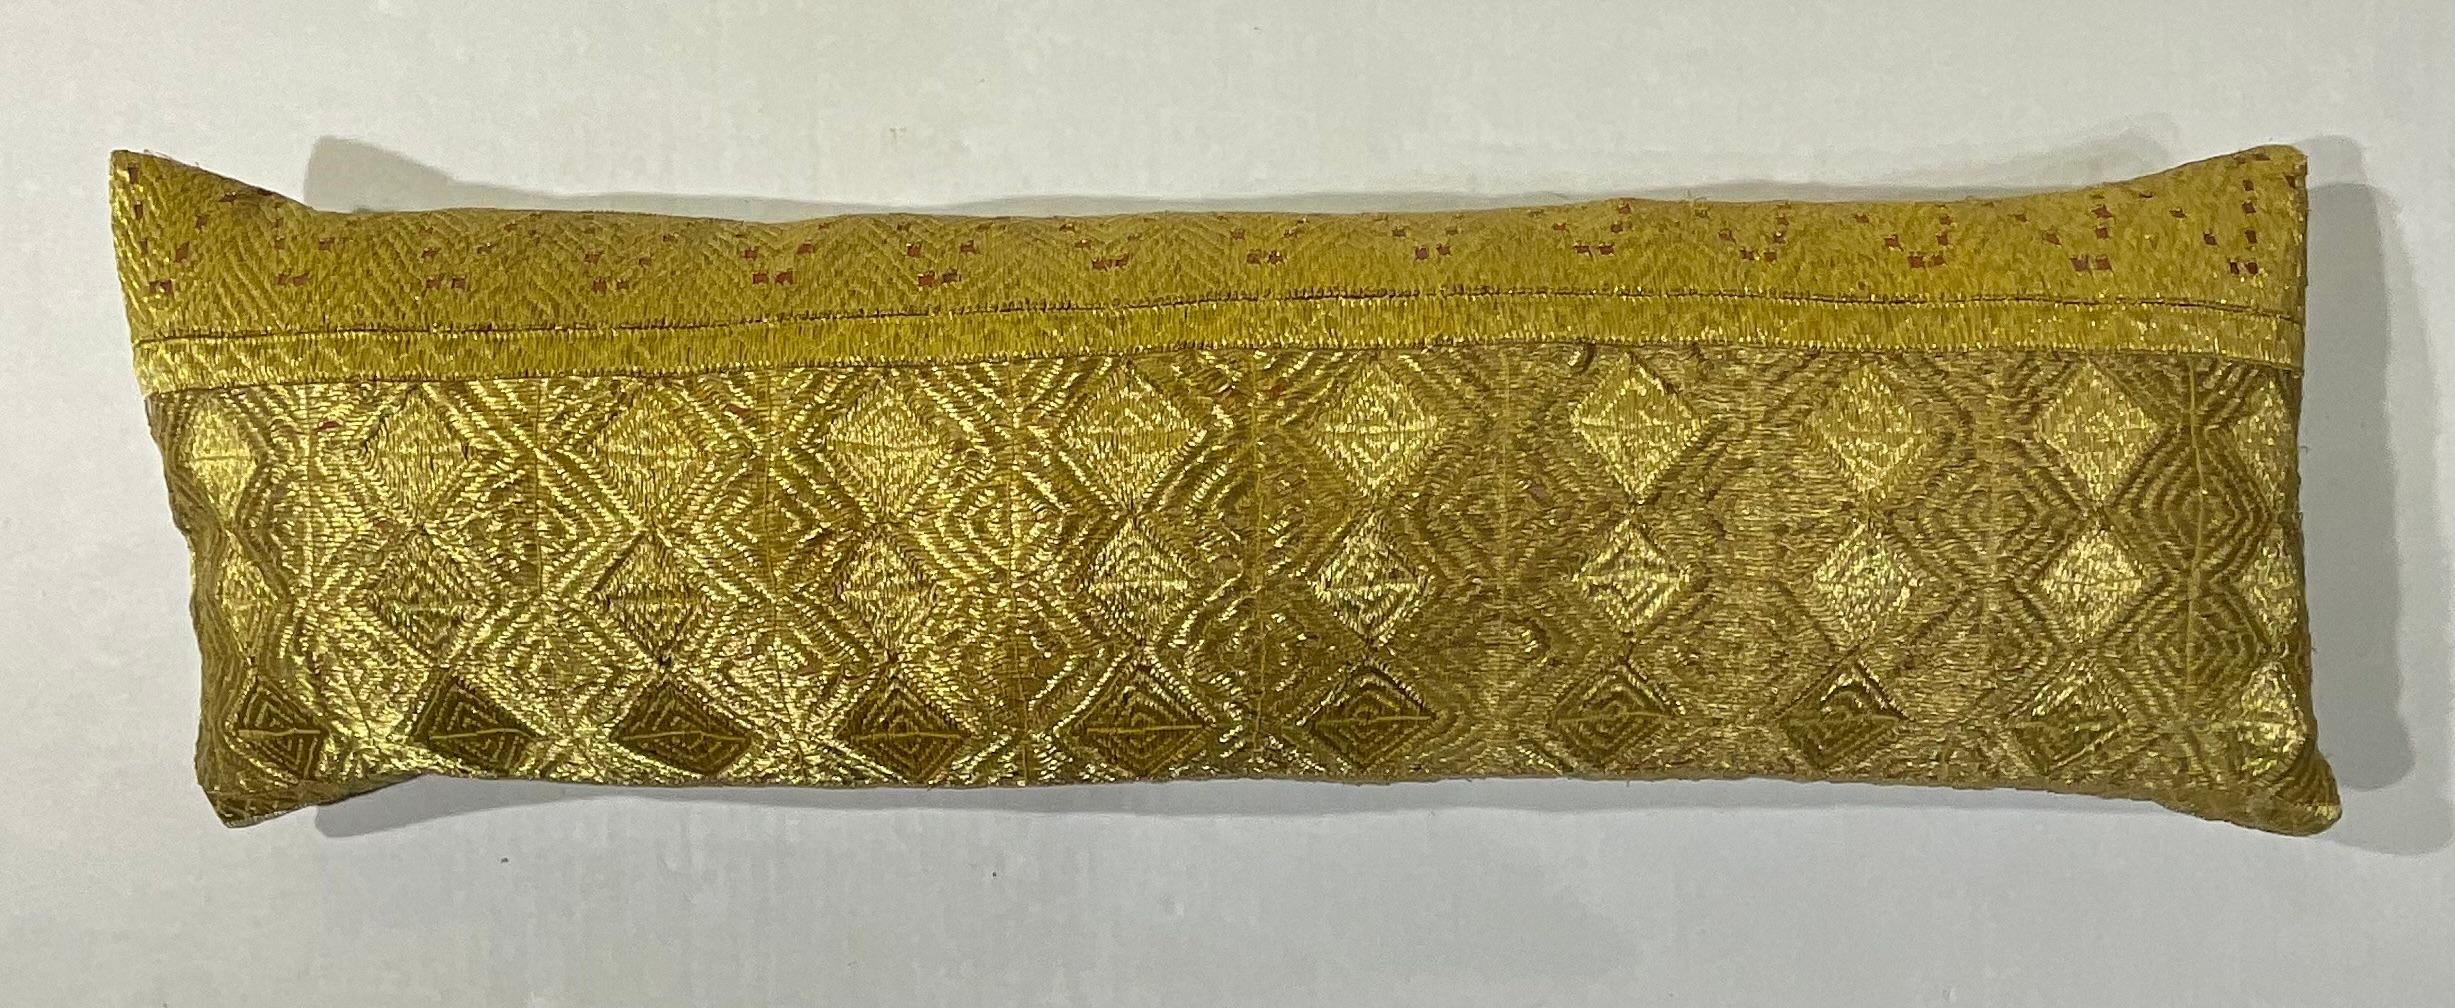 Exceptionnel oreiller en broderie de fils métalliques dorés sur fond de coton avec de magnifiques motifs géométriques artistiques. Support en coton fin. Récupéré d'une grande antiquité du siècle  textile tribal.